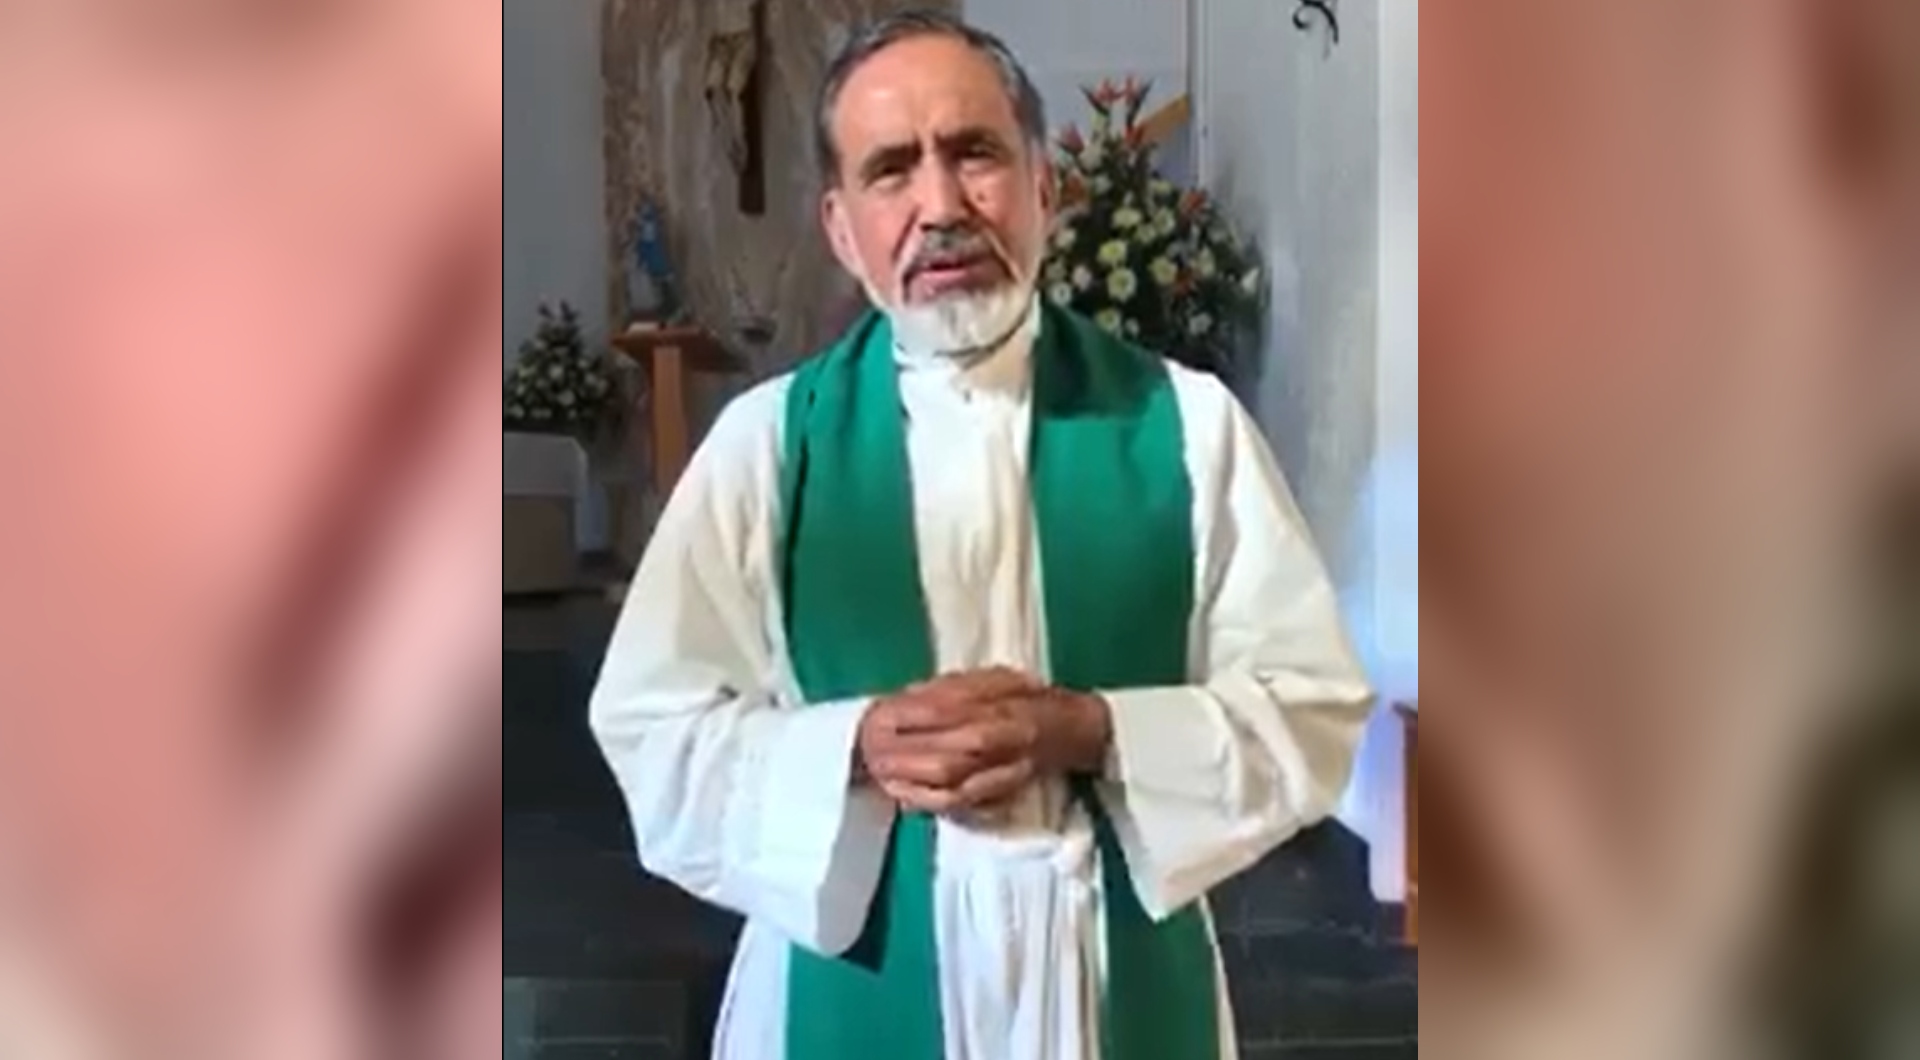 El padre Mateo Calvillo Paz denunció a través de las redes sociales que fue víctima de un presunto sicario que lo golpeó (Foto: Arquidiócesis de Morelia )